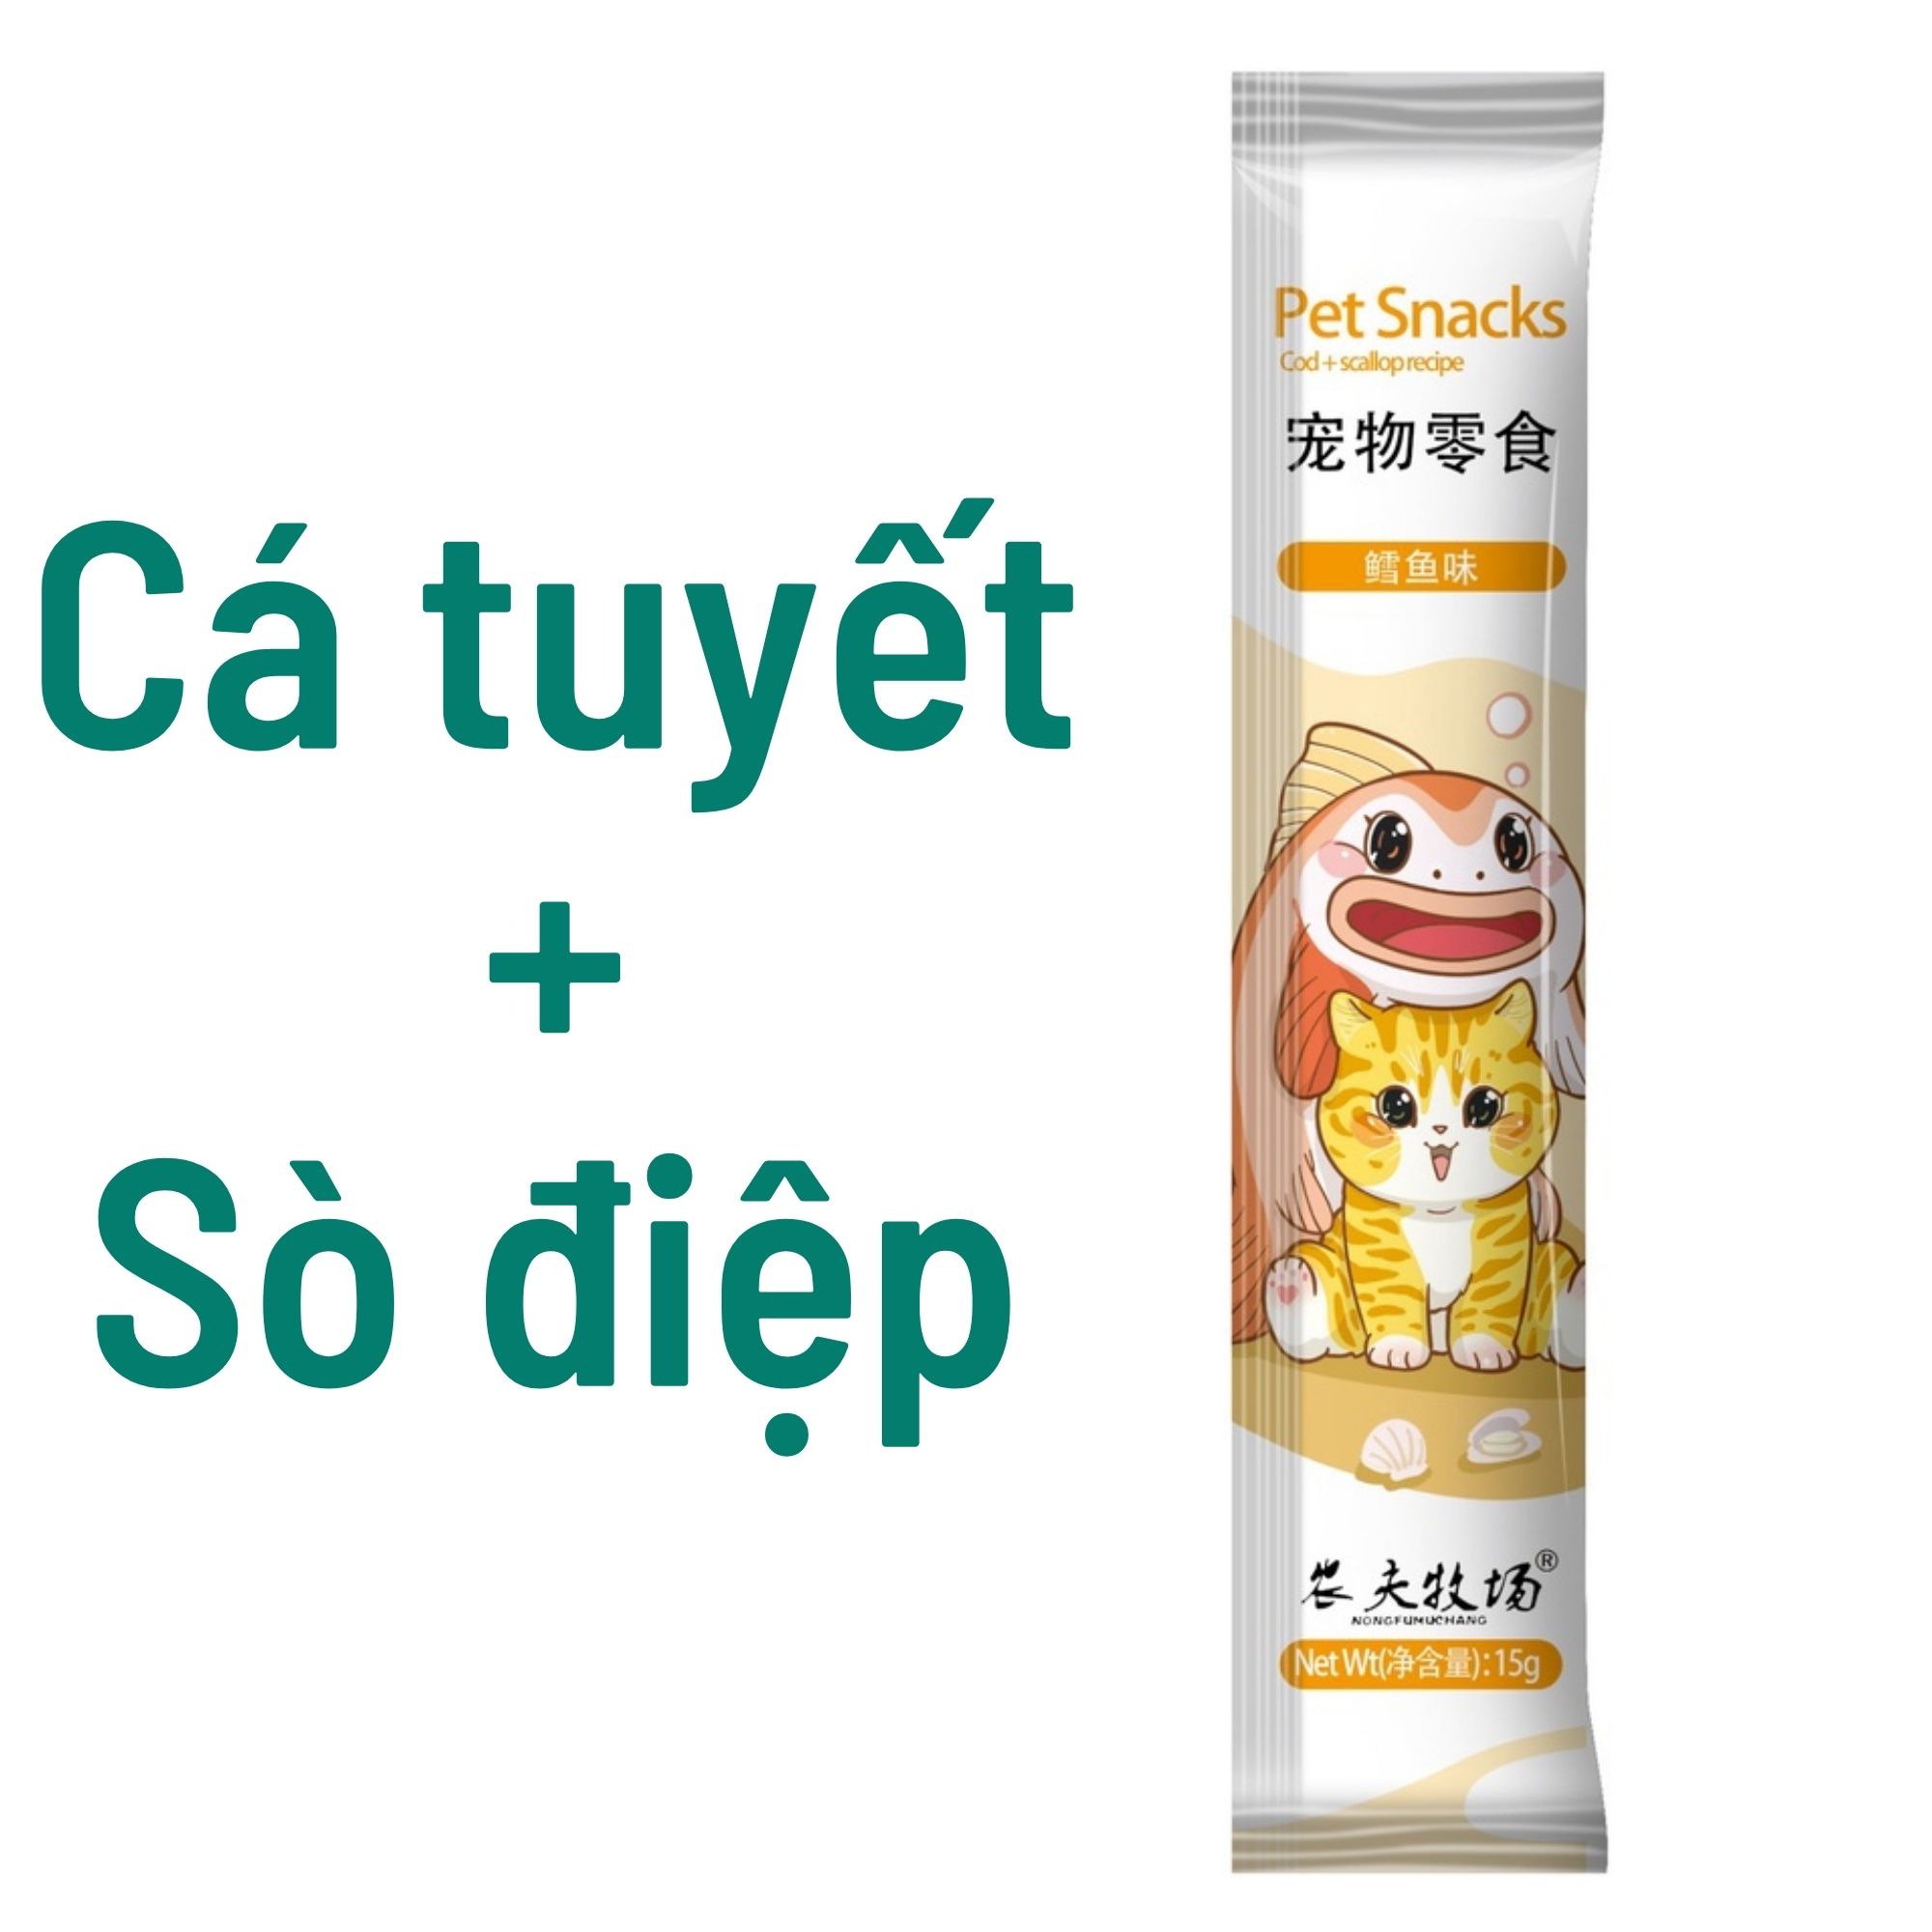 Soup/Súp thưởng cho mèo pet snack Chibi 15g dễ tiêu hóa